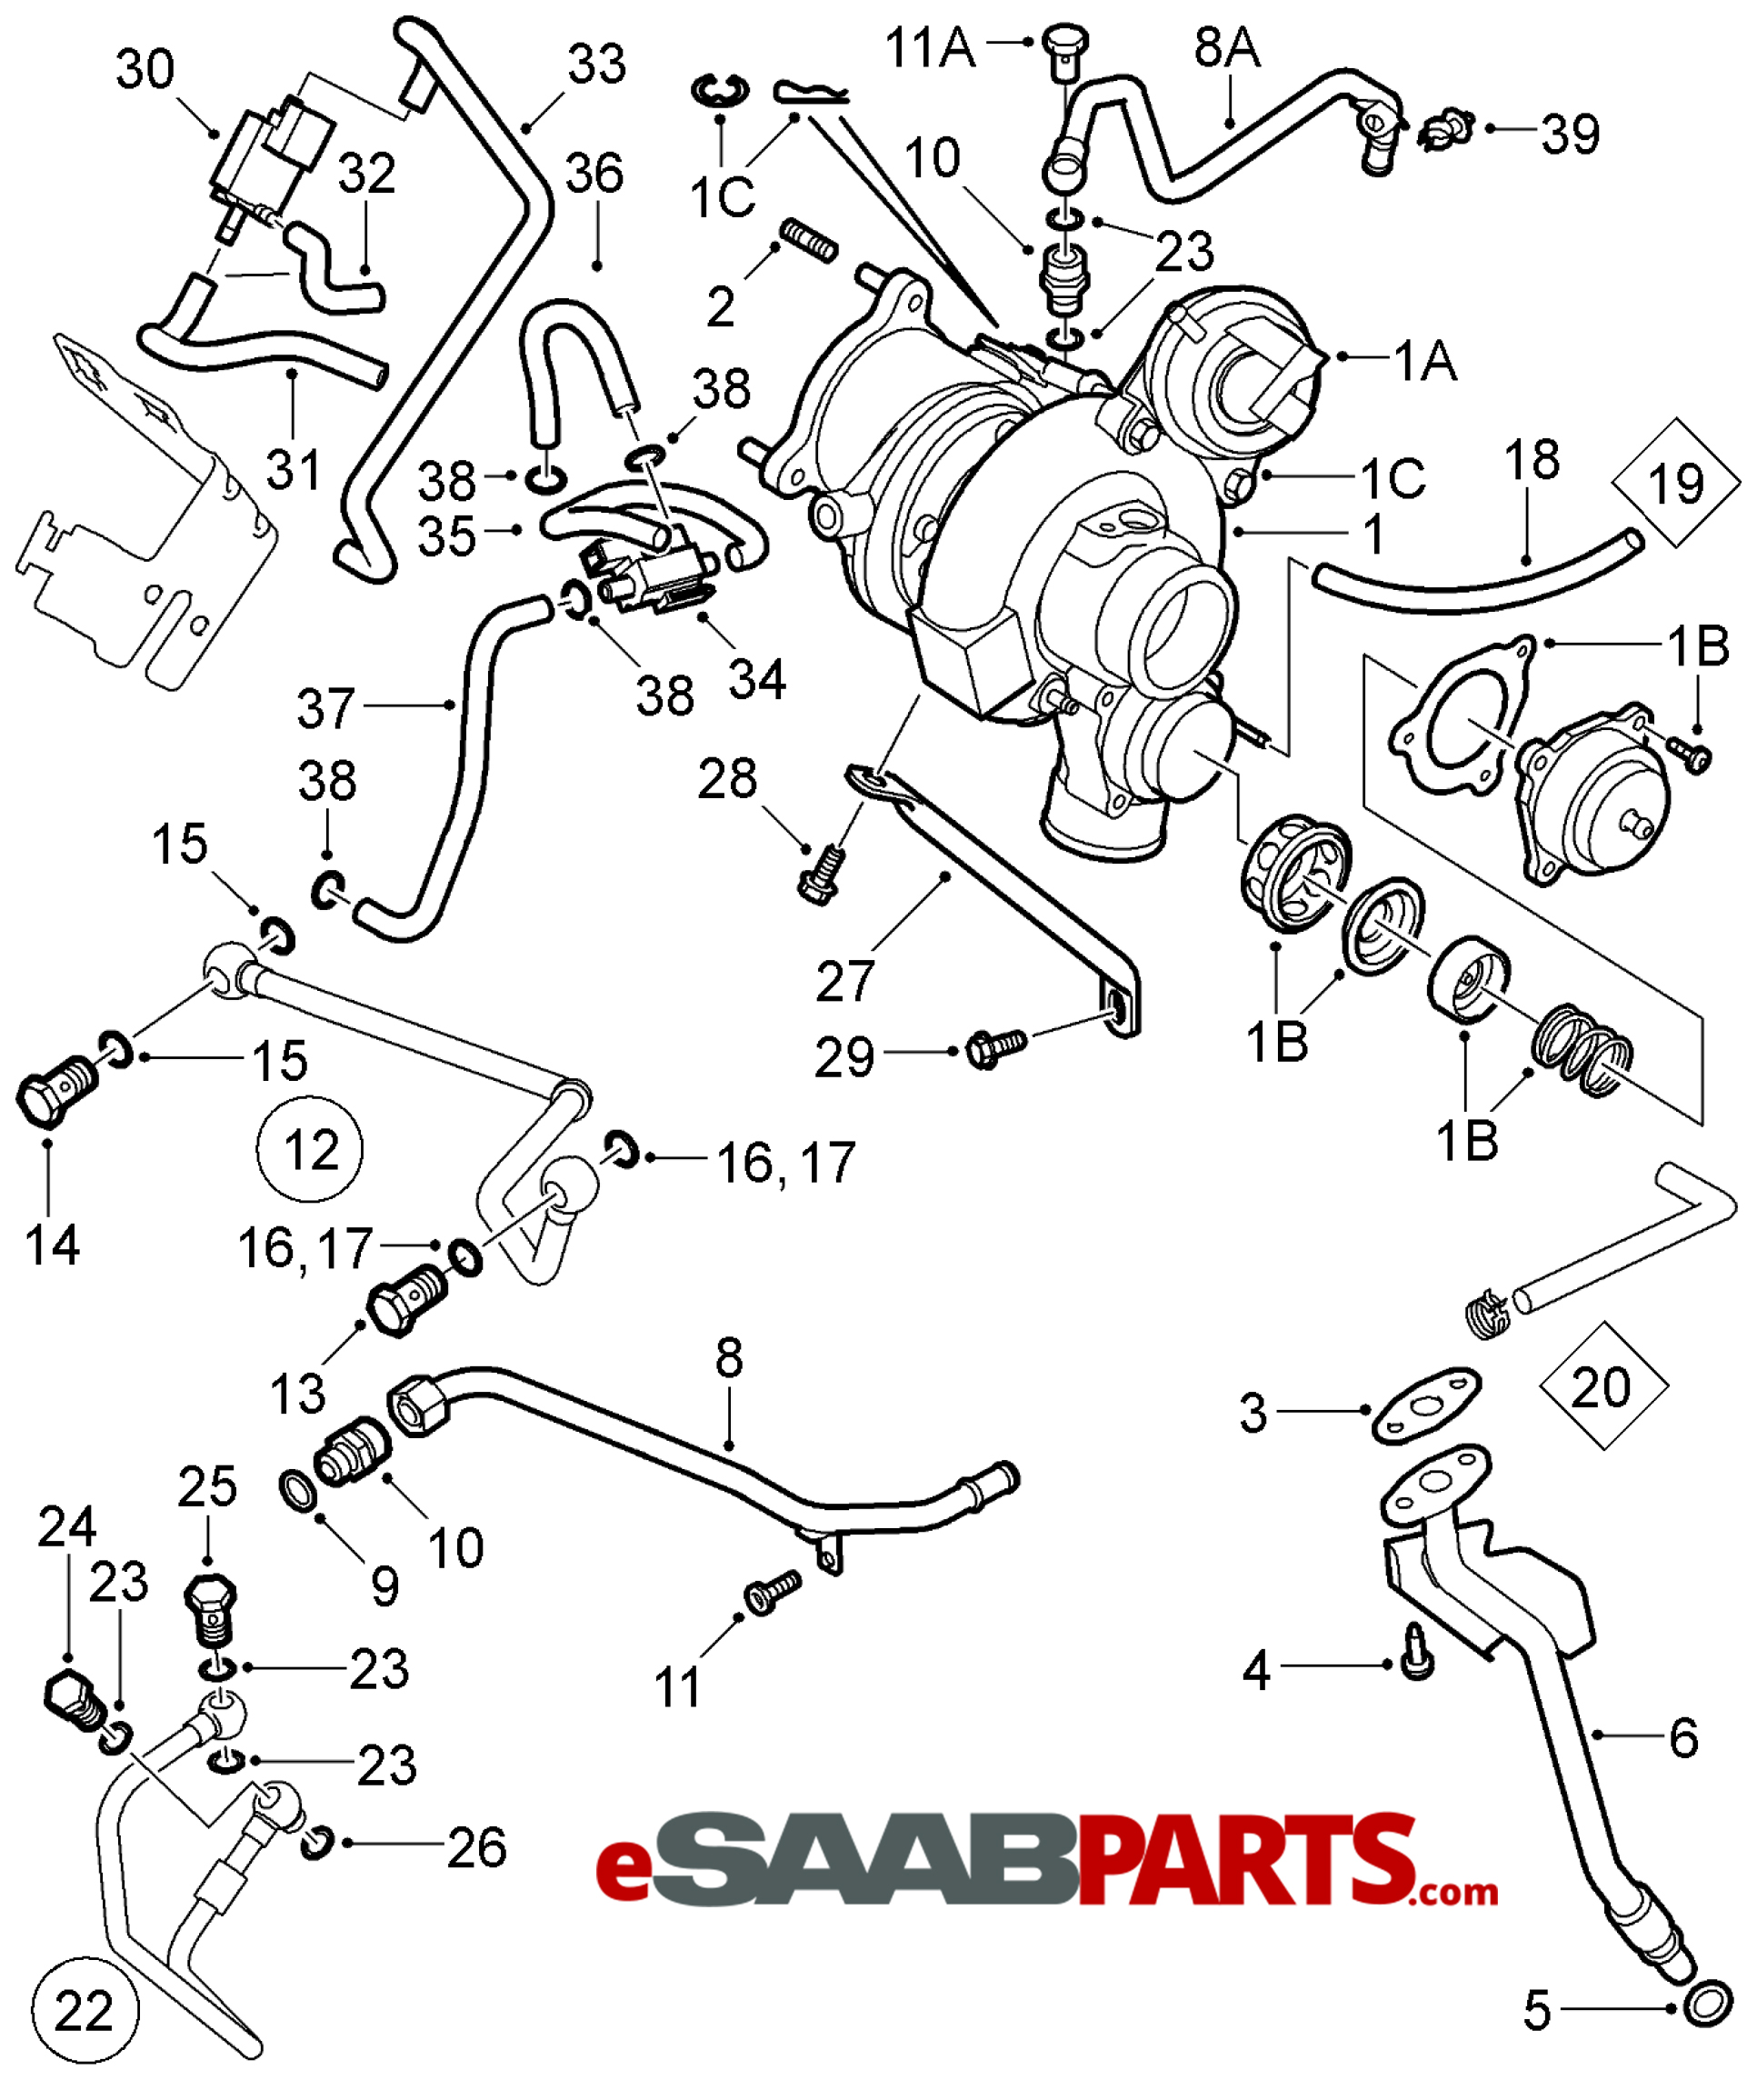 [55571063] SAAB Turbo Oil Line (B207R w/ XWD) - Saab Parts from  eSaabParts.com